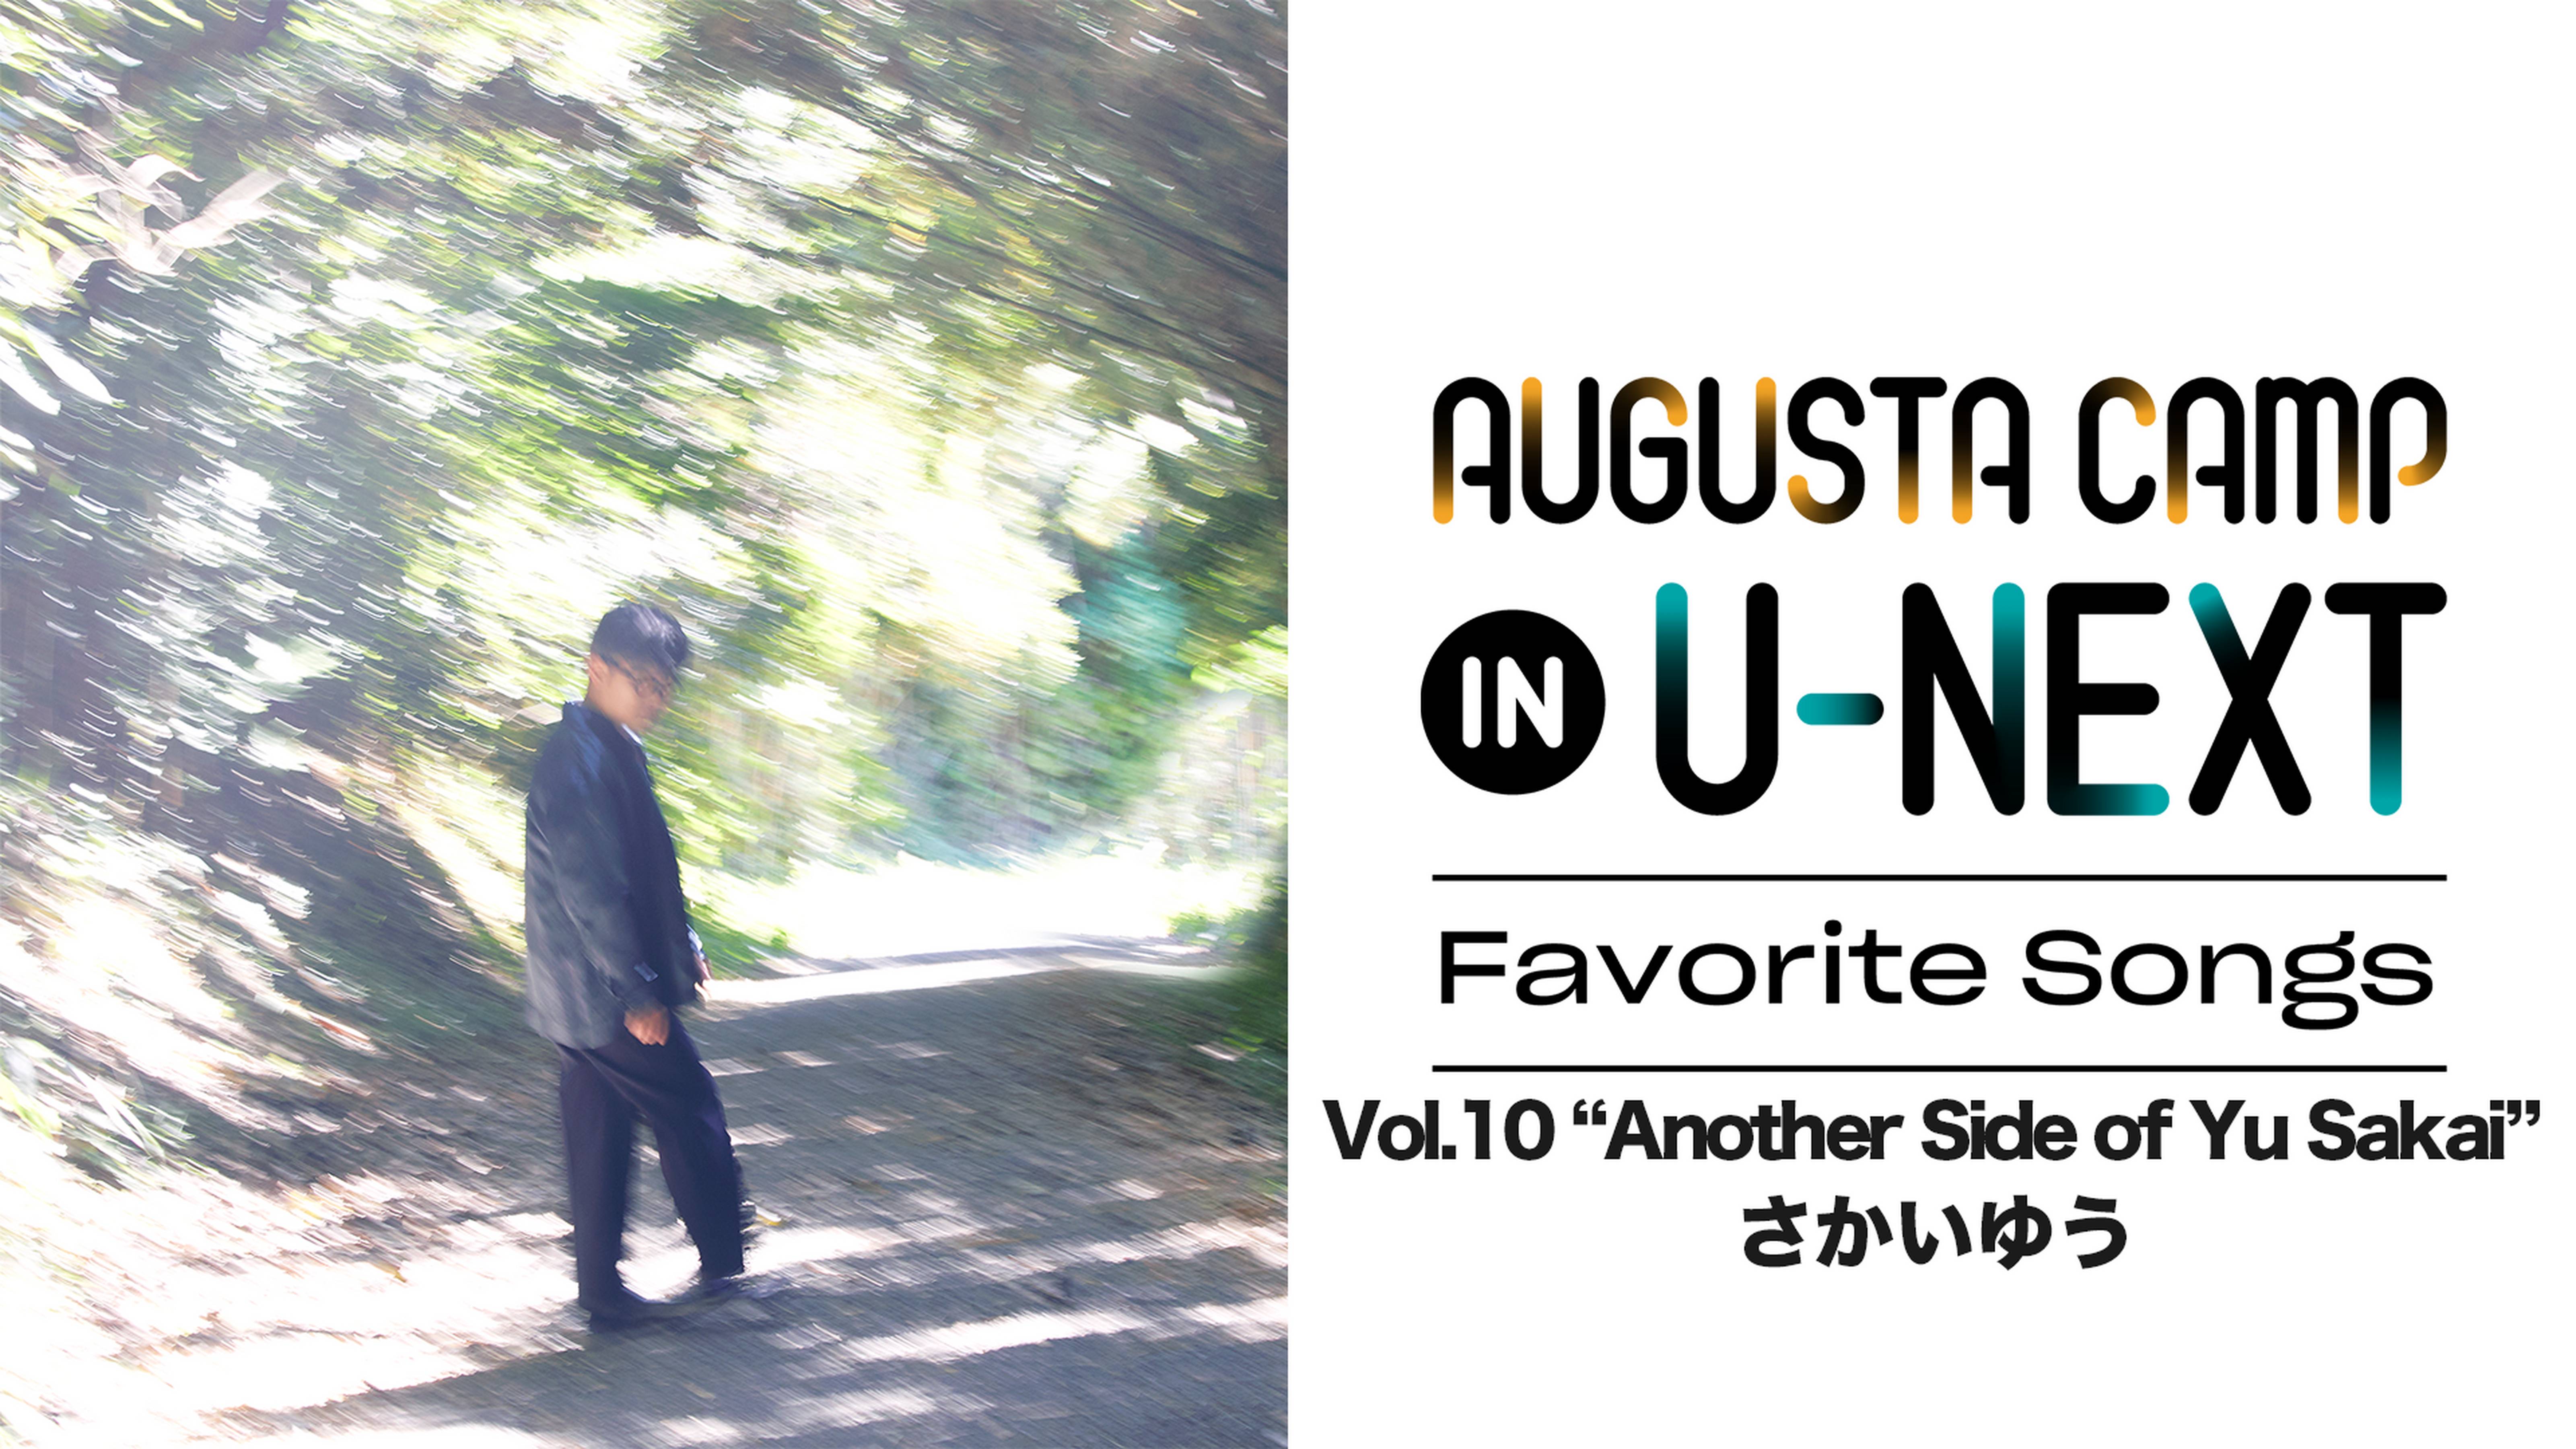 Augusta Camp in U-NEXT ～Favorite Songs～ 特集